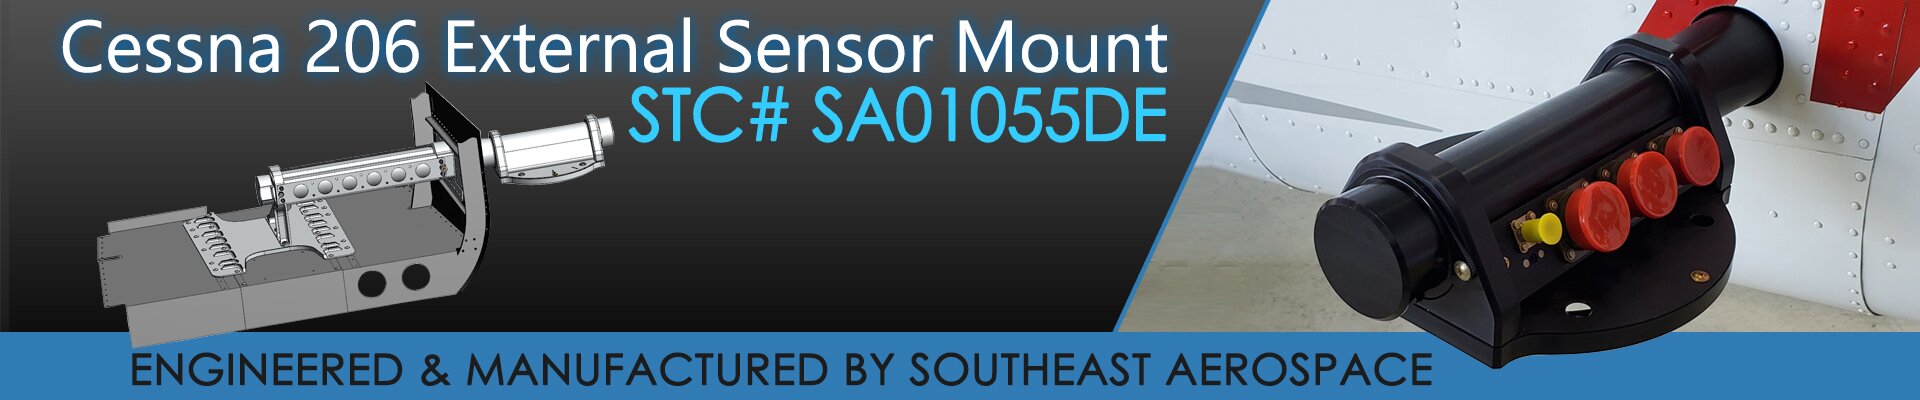 SEA-STC-Cessna-206-Sensor-mount